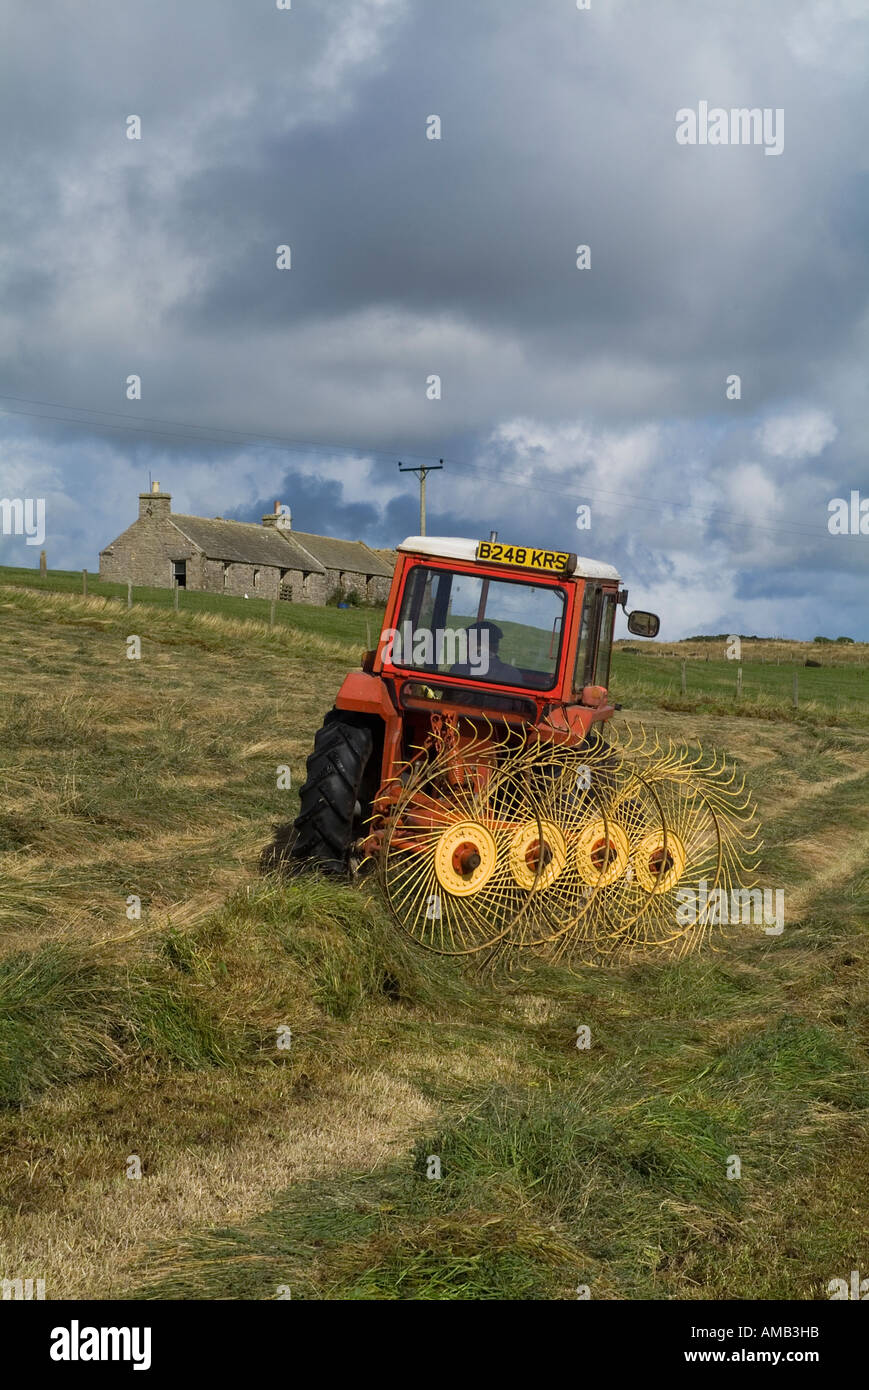 dh MOISSONNAGE tracteur agricole du Royaume-Uni épandage d'ensilage Orkney épandage en herbe sèche machine agricole râtelage du foin coupe de l'écosse Banque D'Images